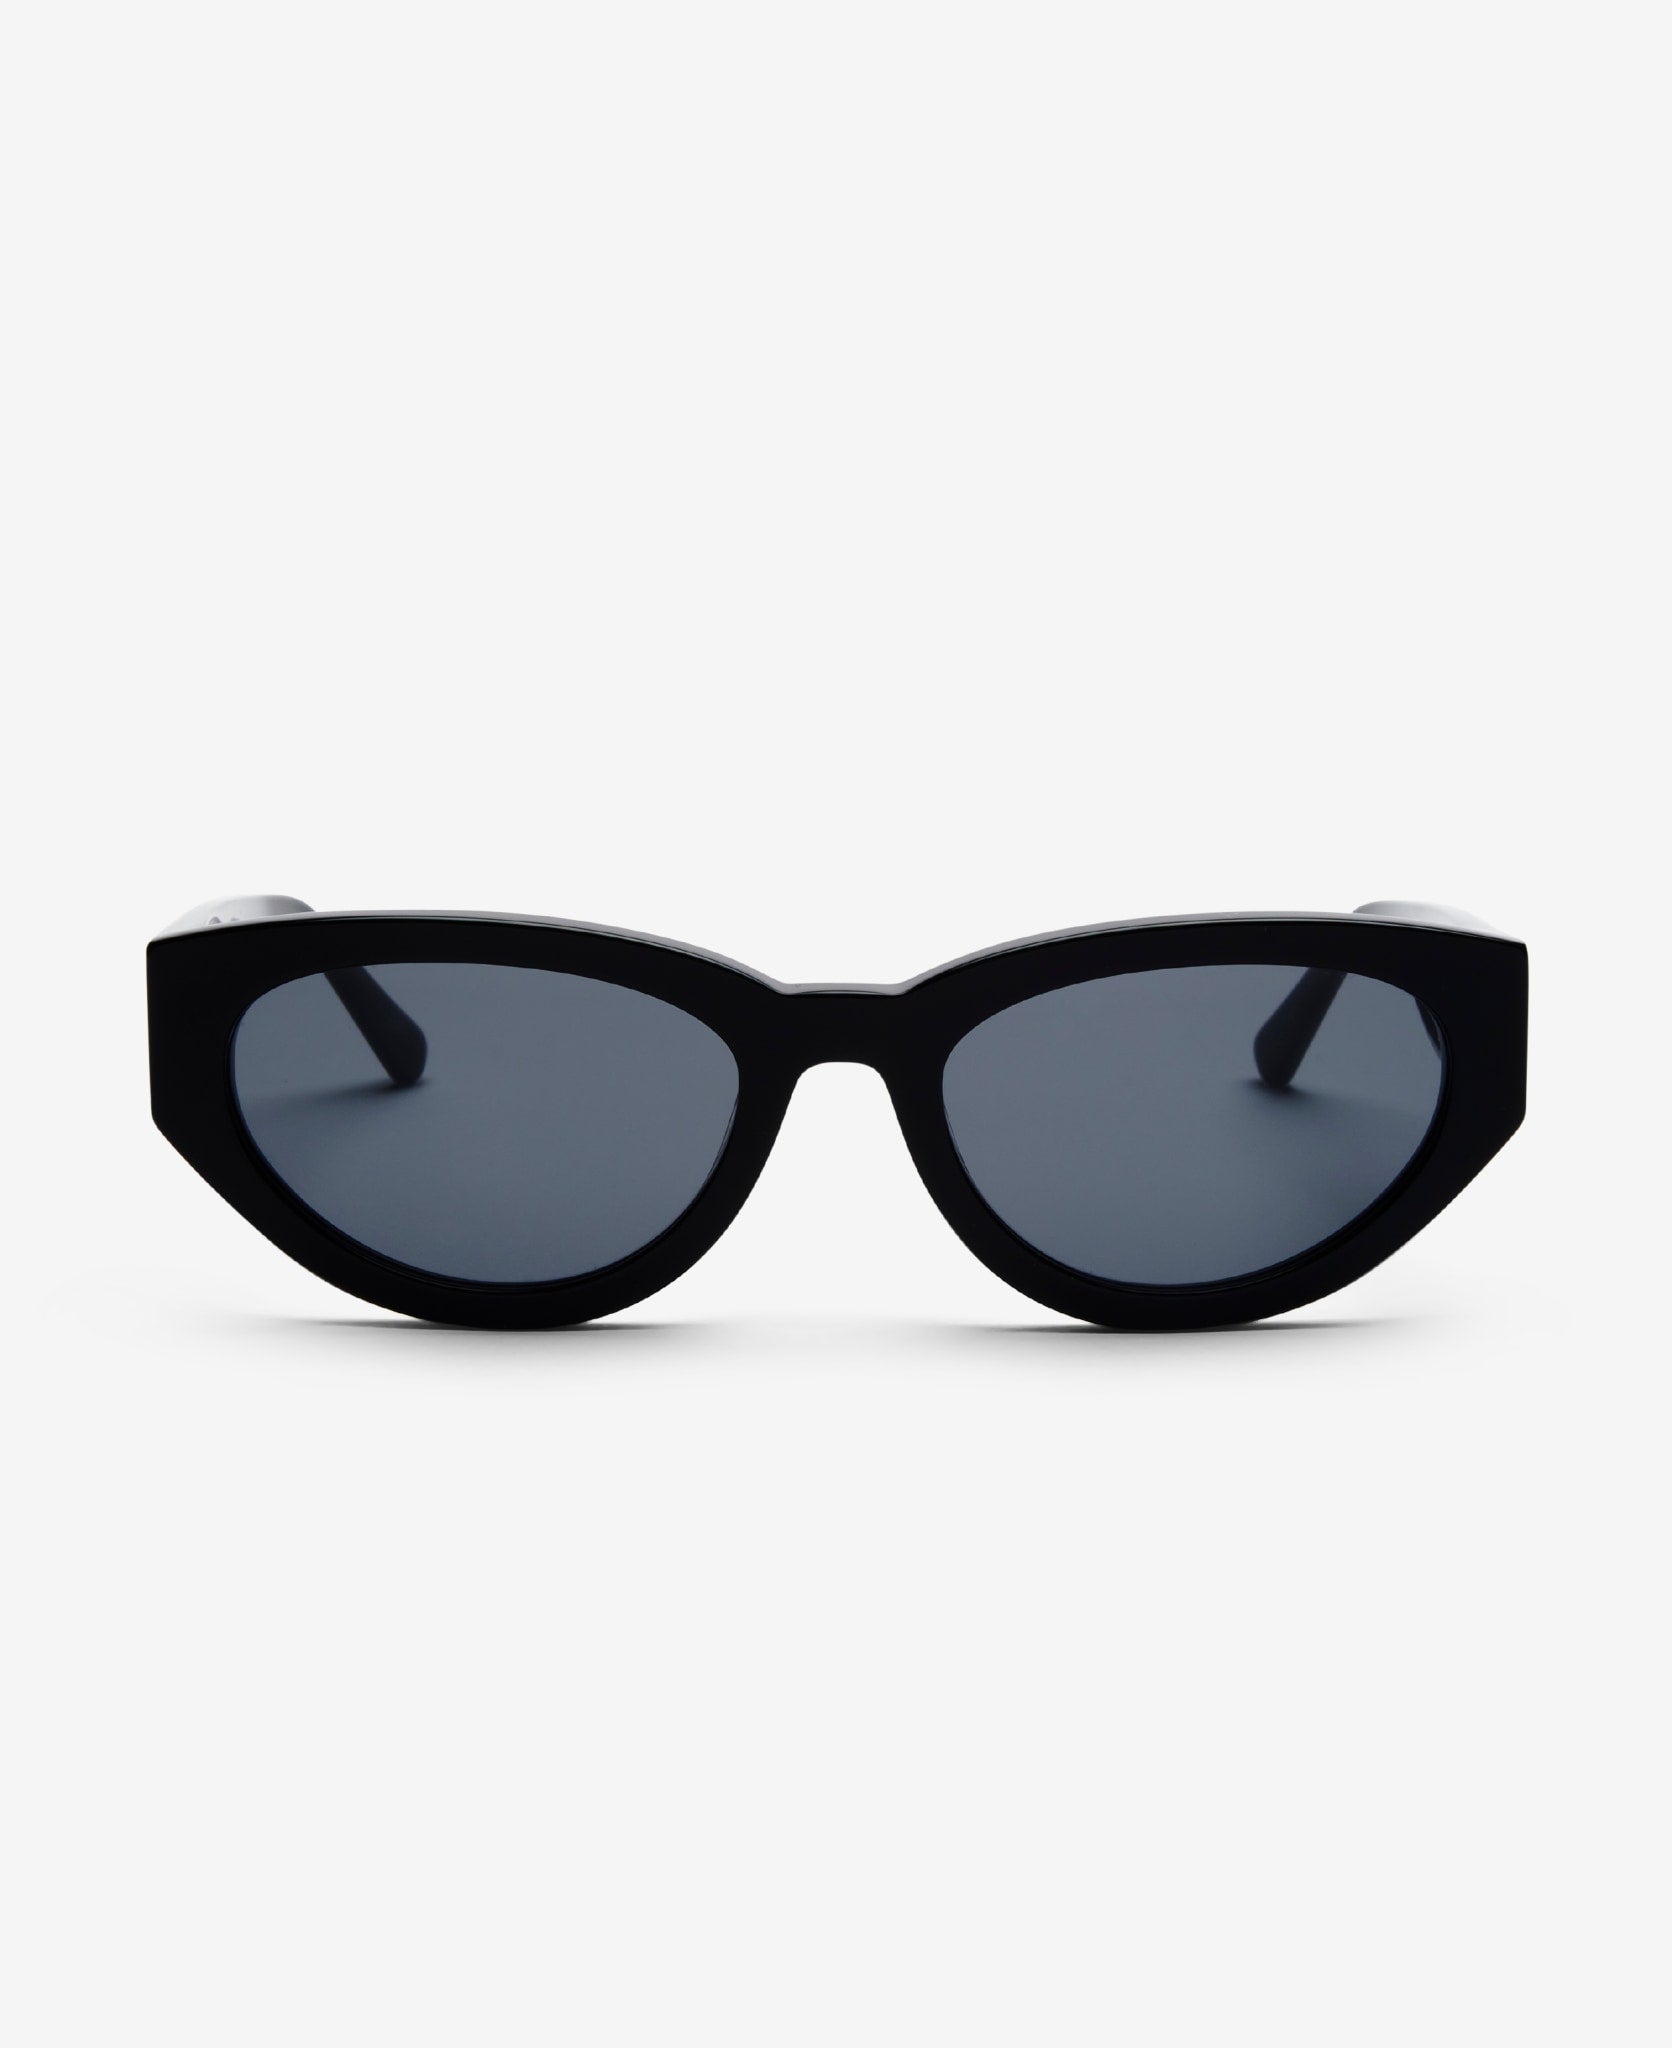 All Sunglasses サングラス | MessyWeekend